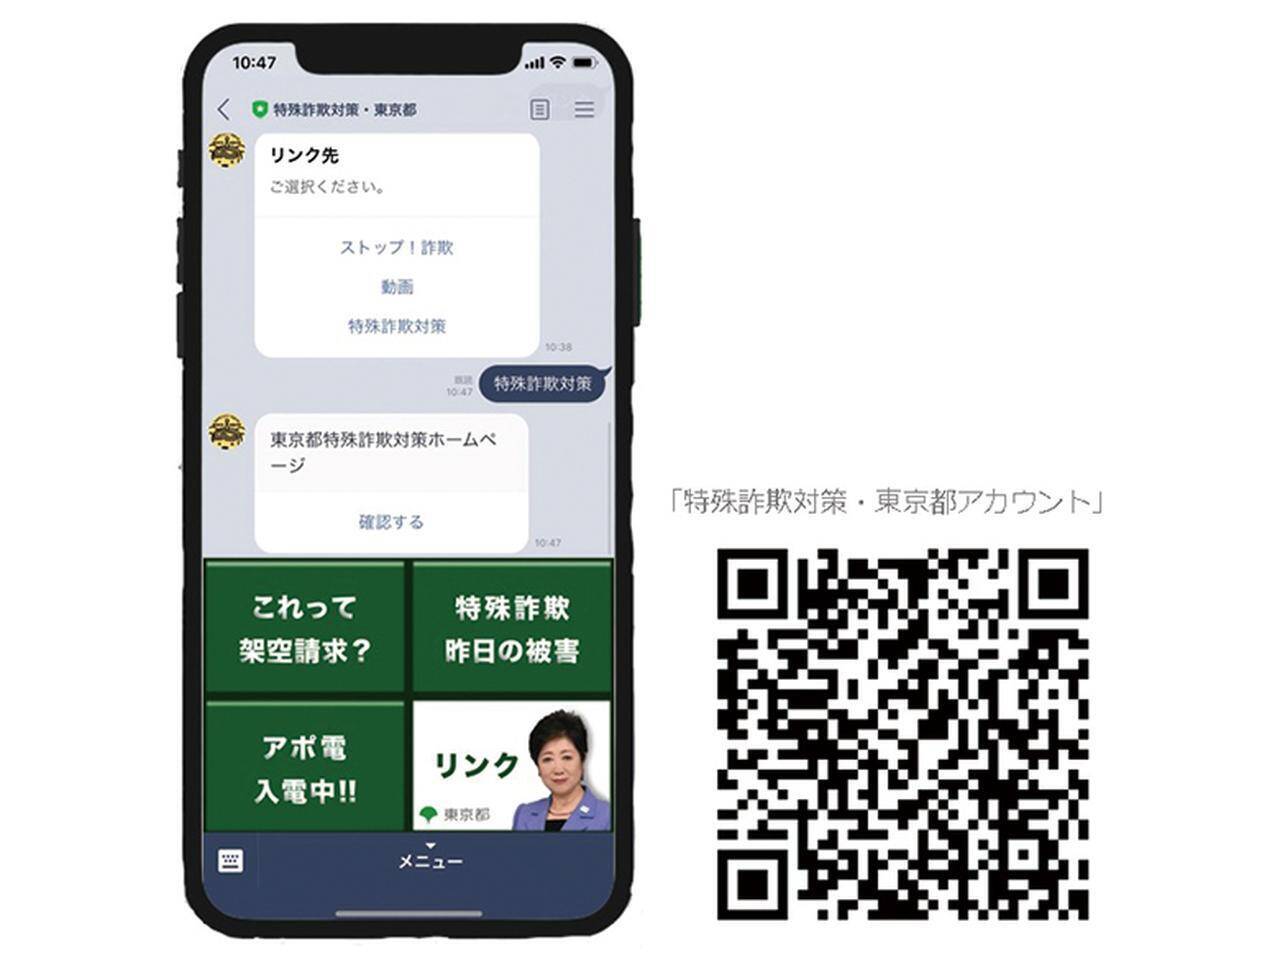 Line 東京都 友だち追加で詐欺対策 架空請求はがきの判定もできる機能も 19年10月14日 エキサイトニュース